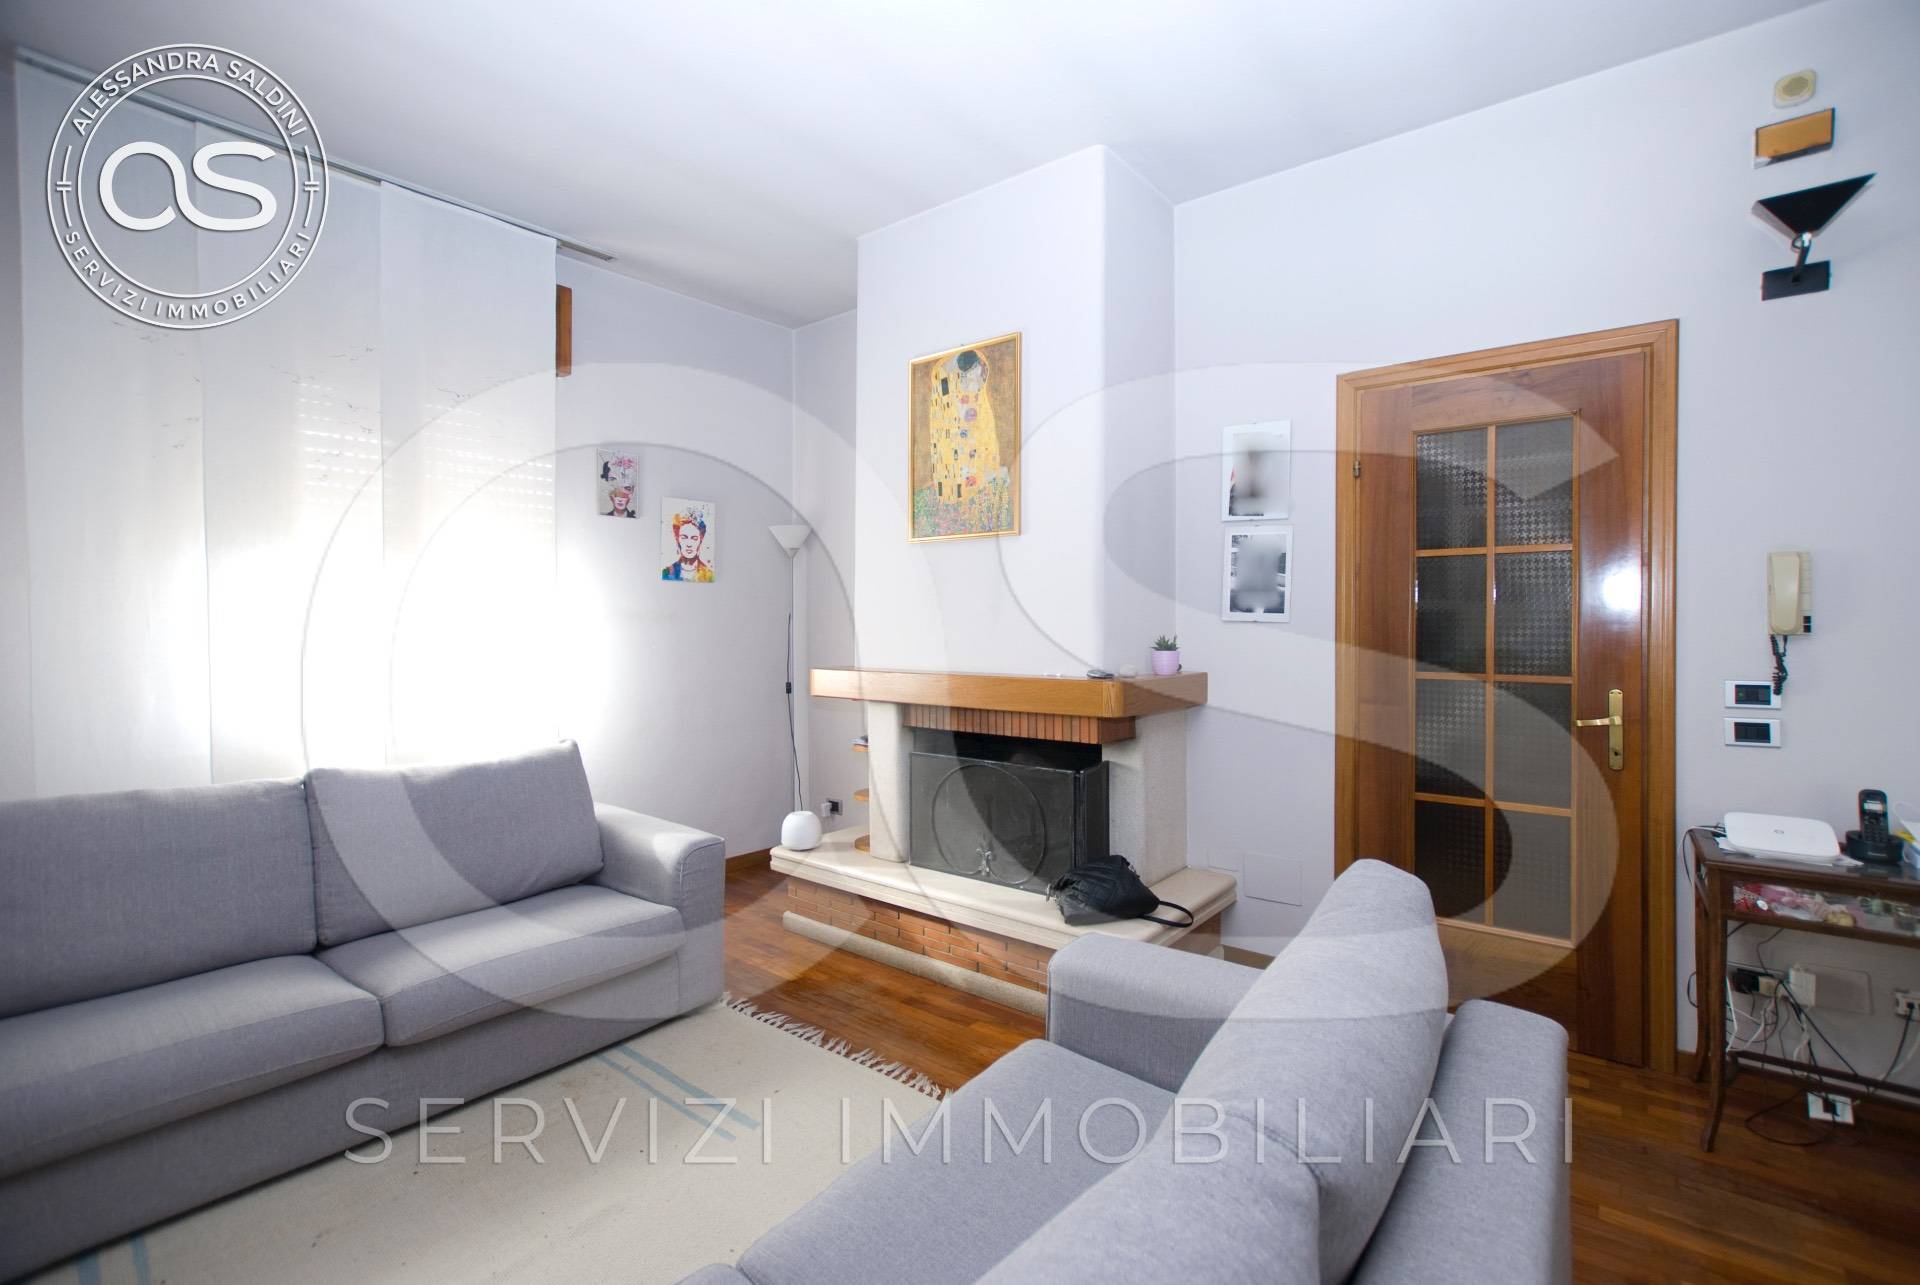 Appartamento in vendita a Manerbio, 3 locali, prezzo € 129.000 | PortaleAgenzieImmobiliari.it